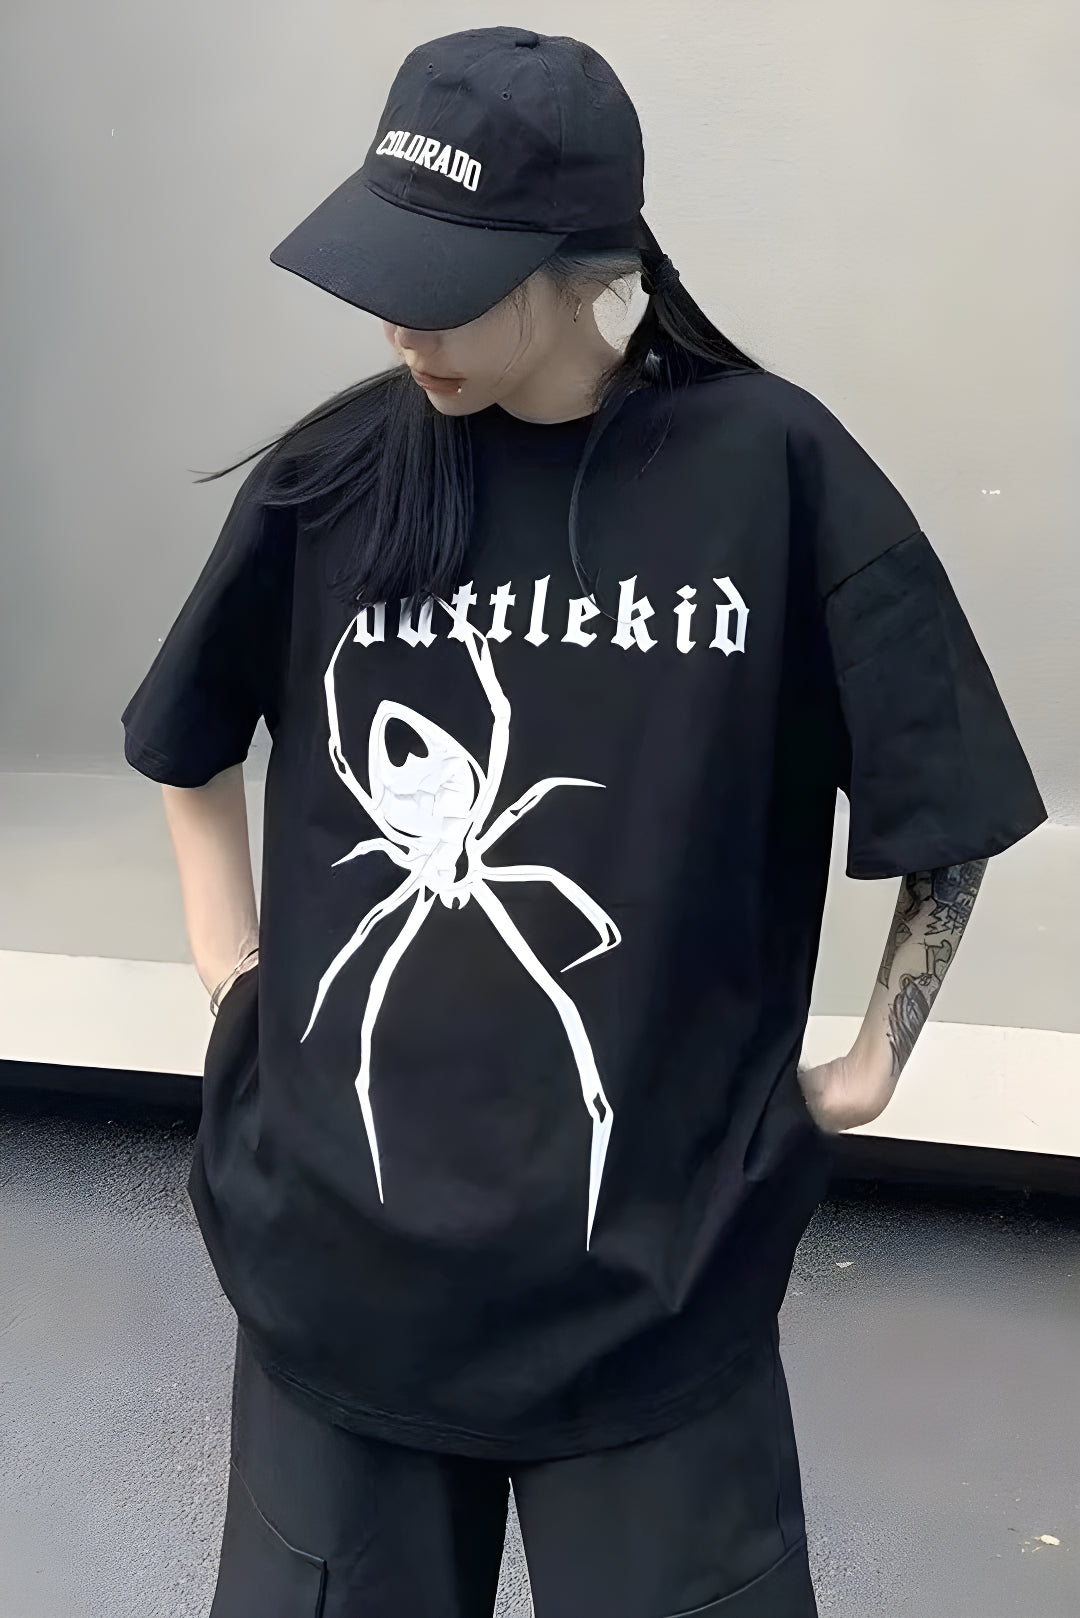 Battlekid Spider T-shirt